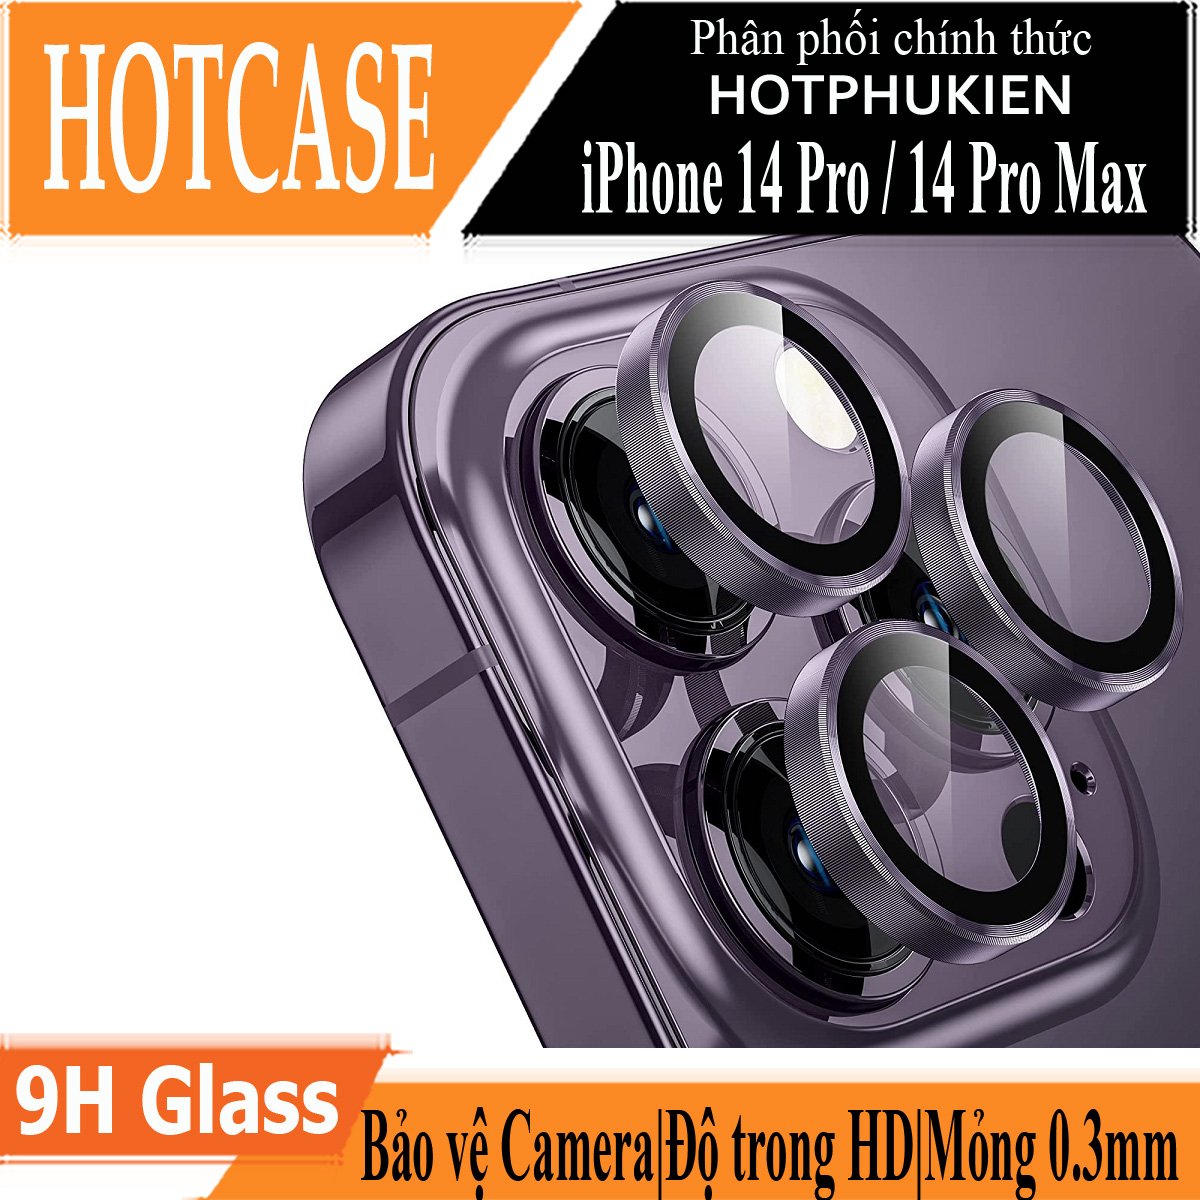 Bộ miếng dán kính cường lực bảo vệ Camera cho iPhone 14 Pro / 14 Pro Max hiệu HOTCASE URR mang lại khả năng chụp hình sắc nét full HD (độ cứng 9H, tặng kèm khung tự dán)